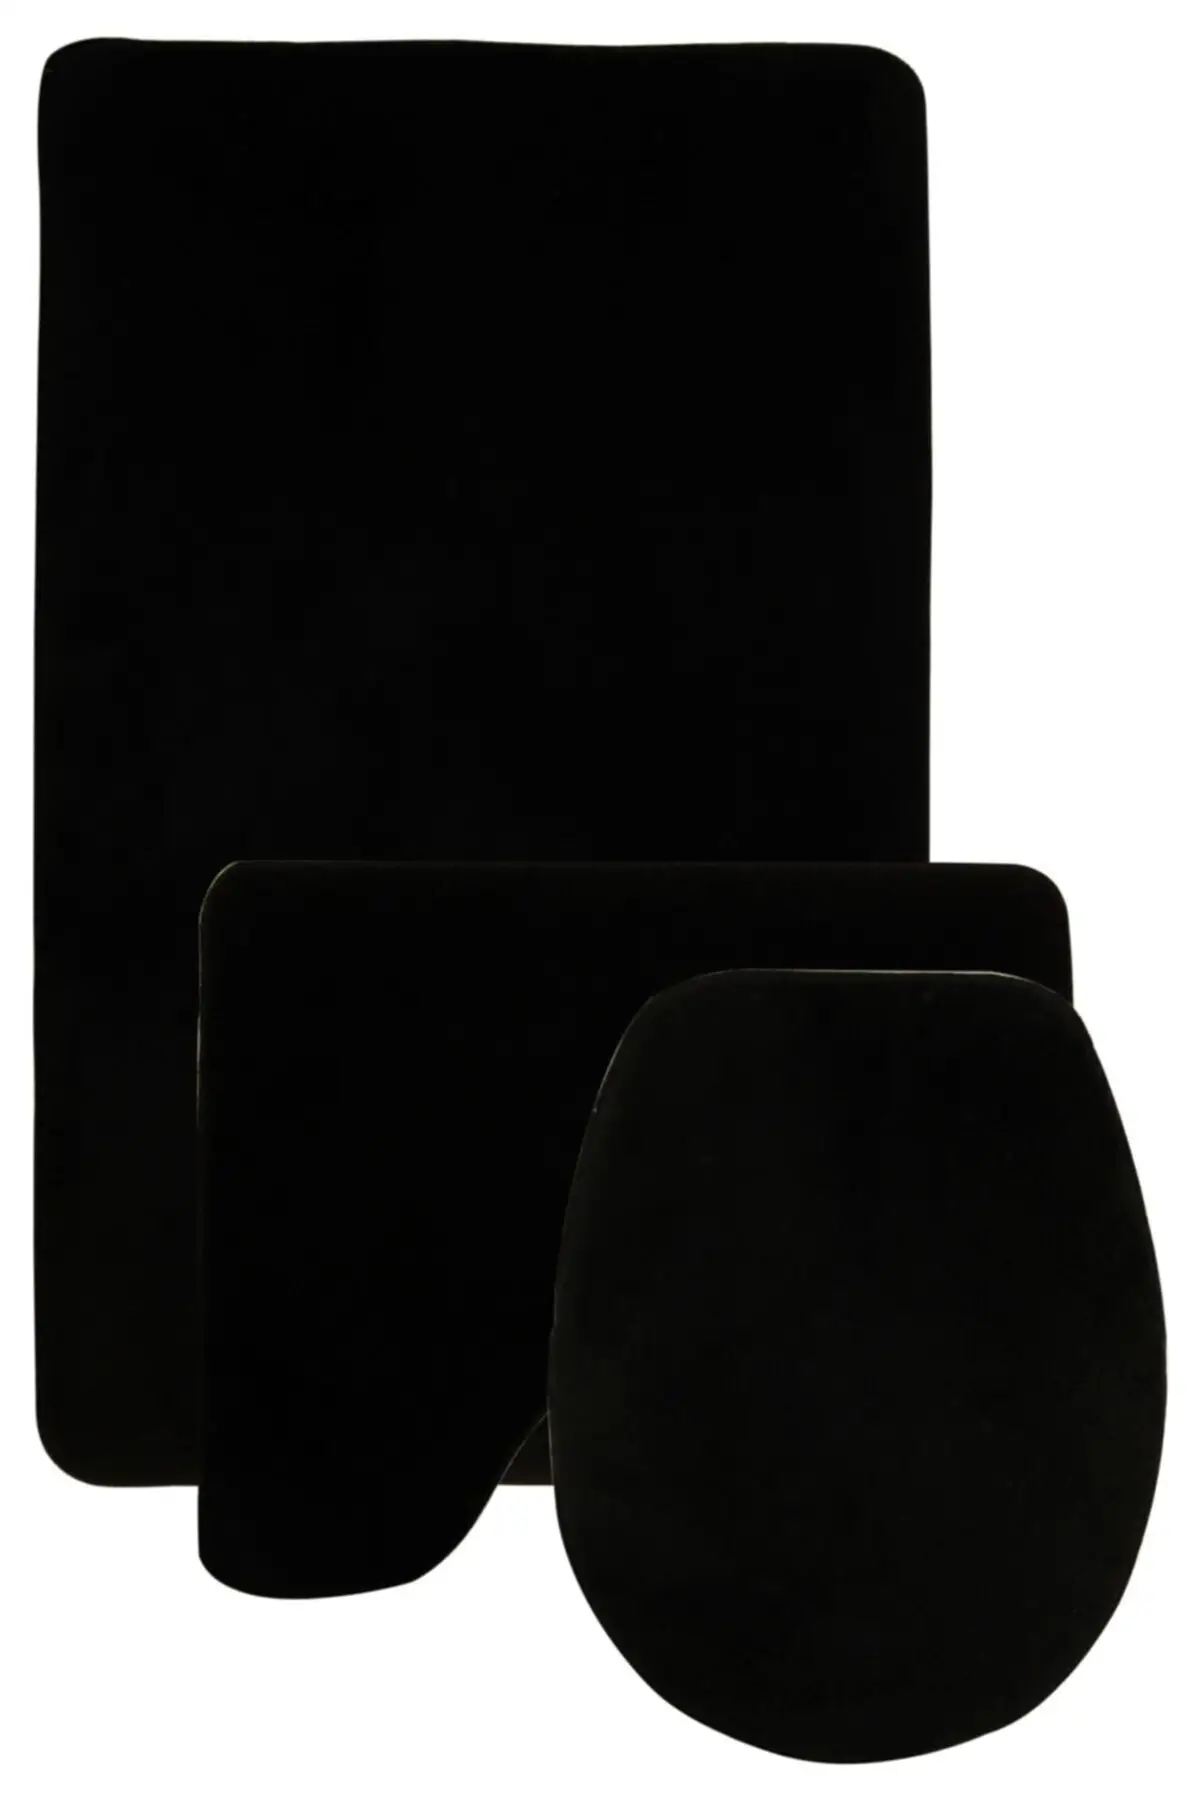 

Damask 3 'lü плоский черный ультразвуковой коврик для ванной набор нескользящий нижний коврик для сиденья унитаза фигурный Текстиль для дома и